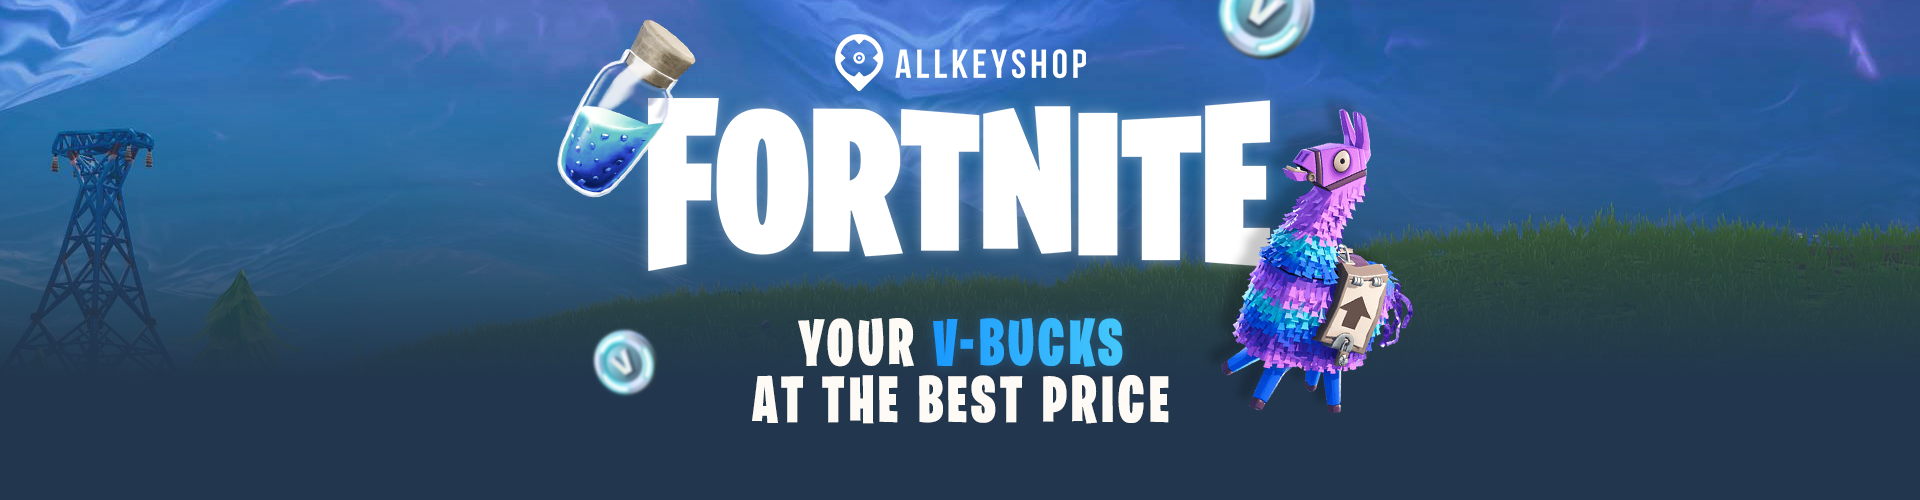 Allkeyshop Fortnite V-Buck